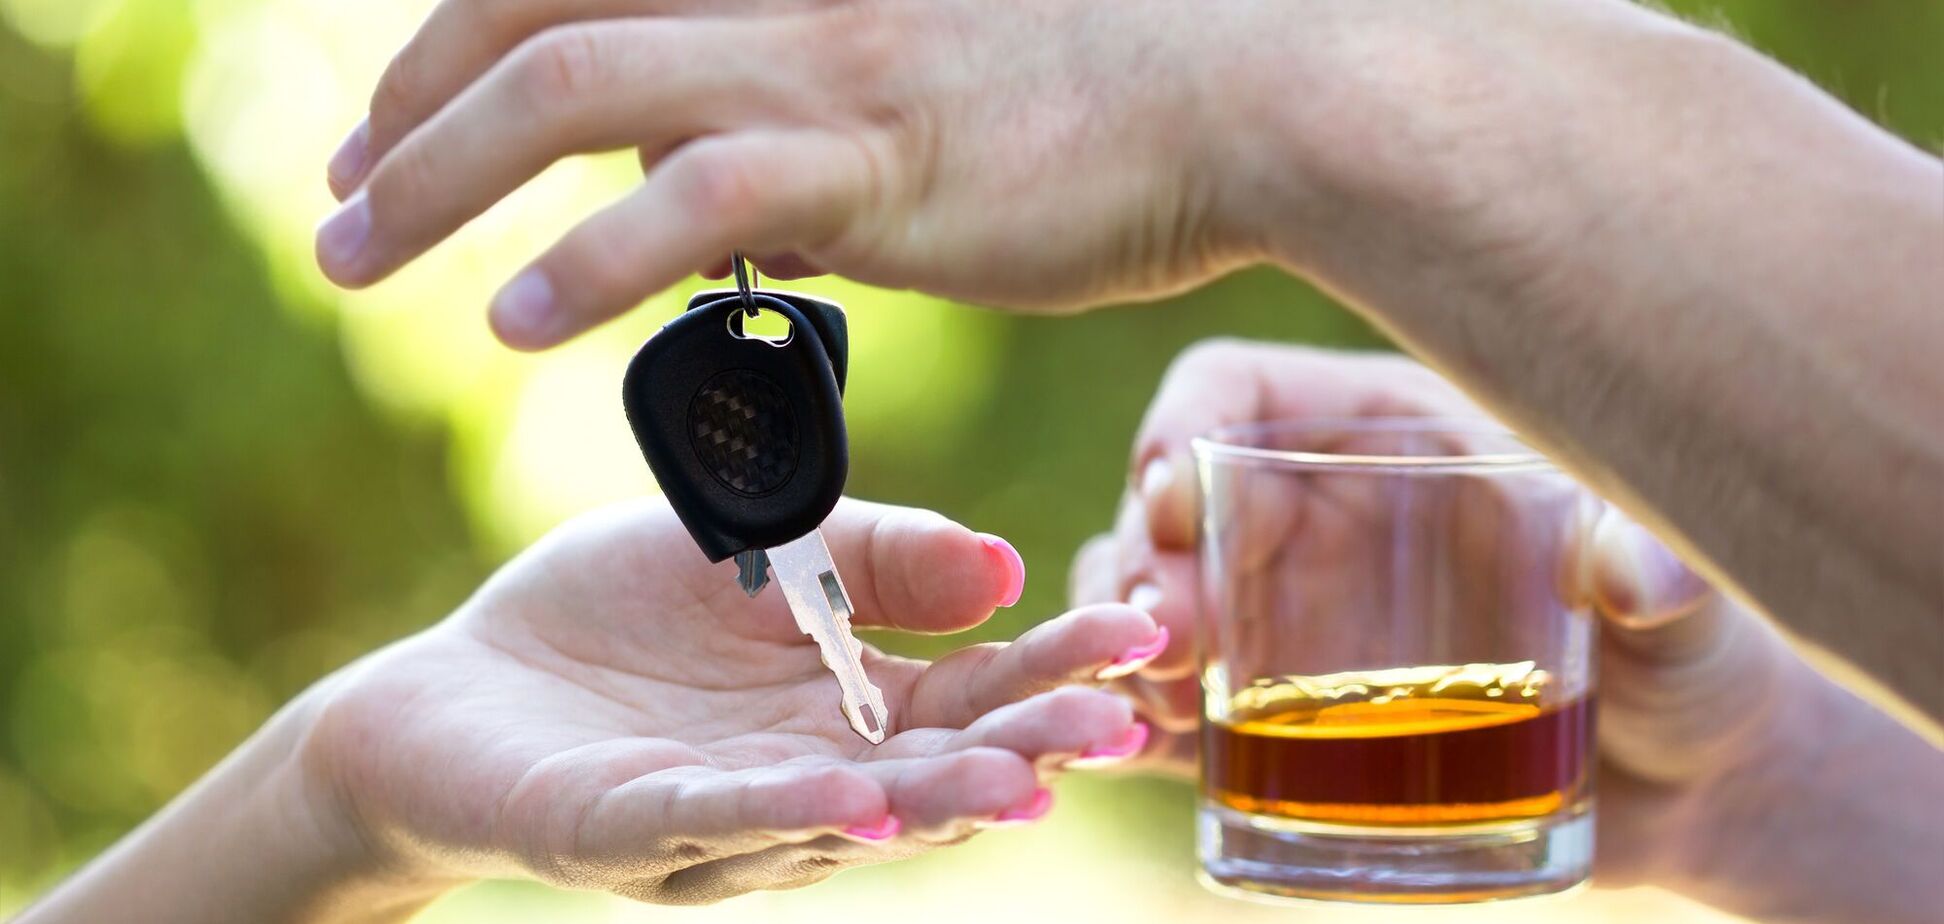 Алкоголь та авто несумісні: коли можна сідати за кермо після застілля